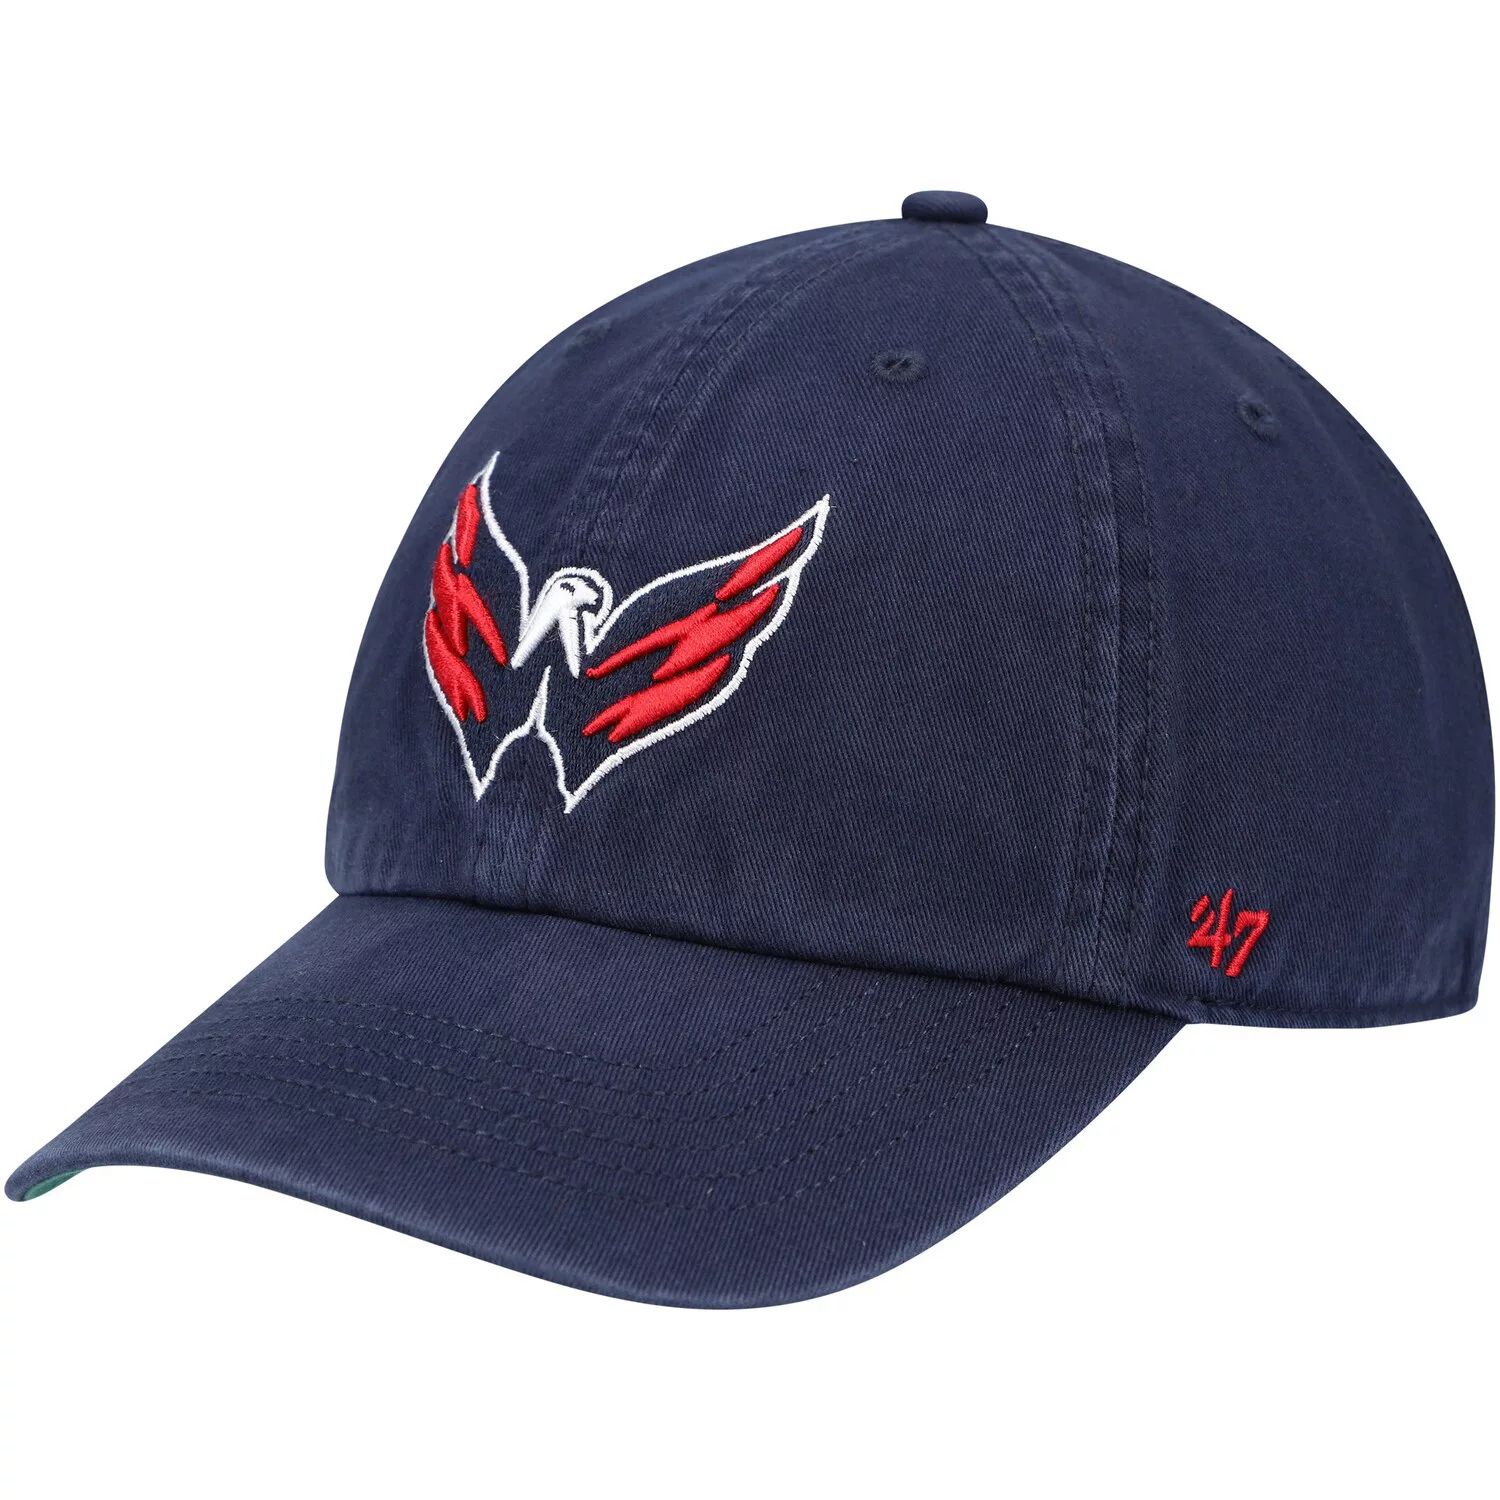 Мужская шляпа темно-синего цвета с логотипом Washington Capitals '47, франшиза, приталенная шляпа